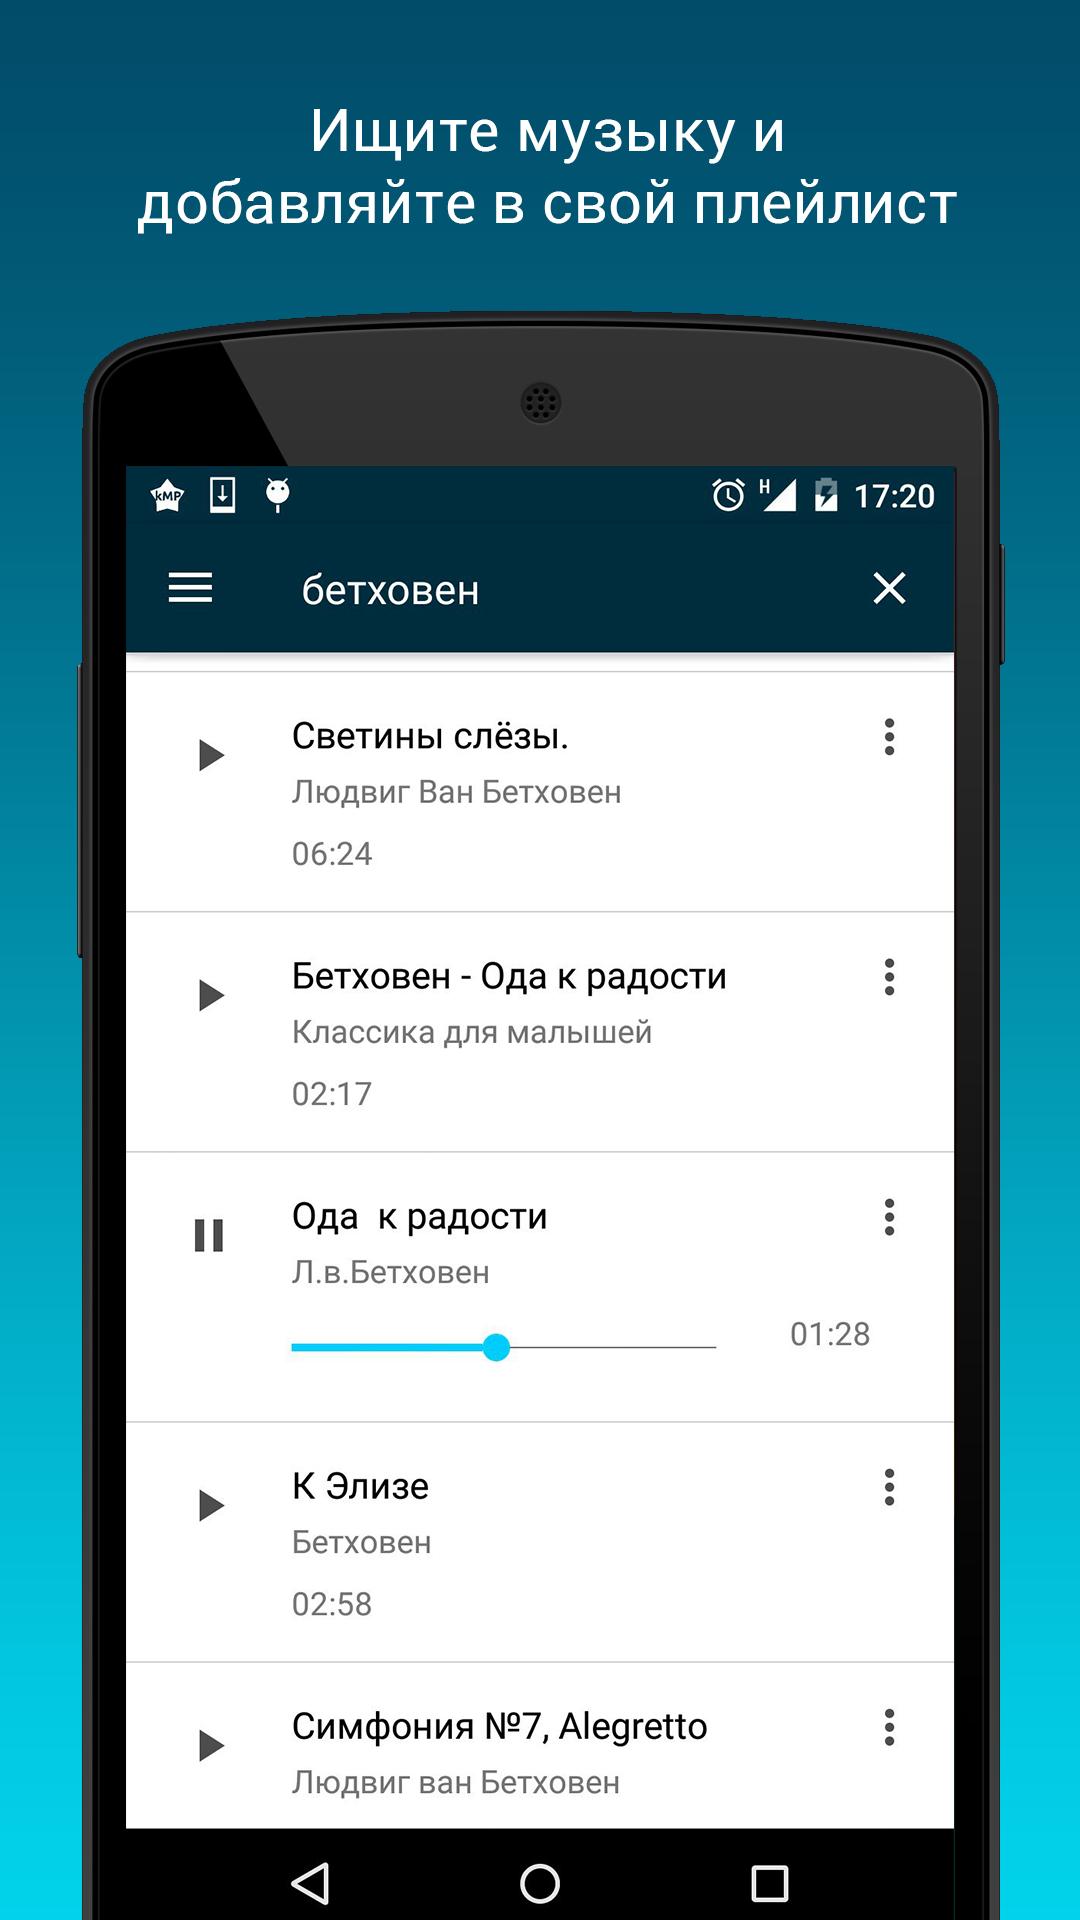 Music vk apk. Приложения для своего плейлиста. Приложение чтобы найти музыку. Все версии ВК 4.0. Приложения для музыки на андроид без интернета из ВК.